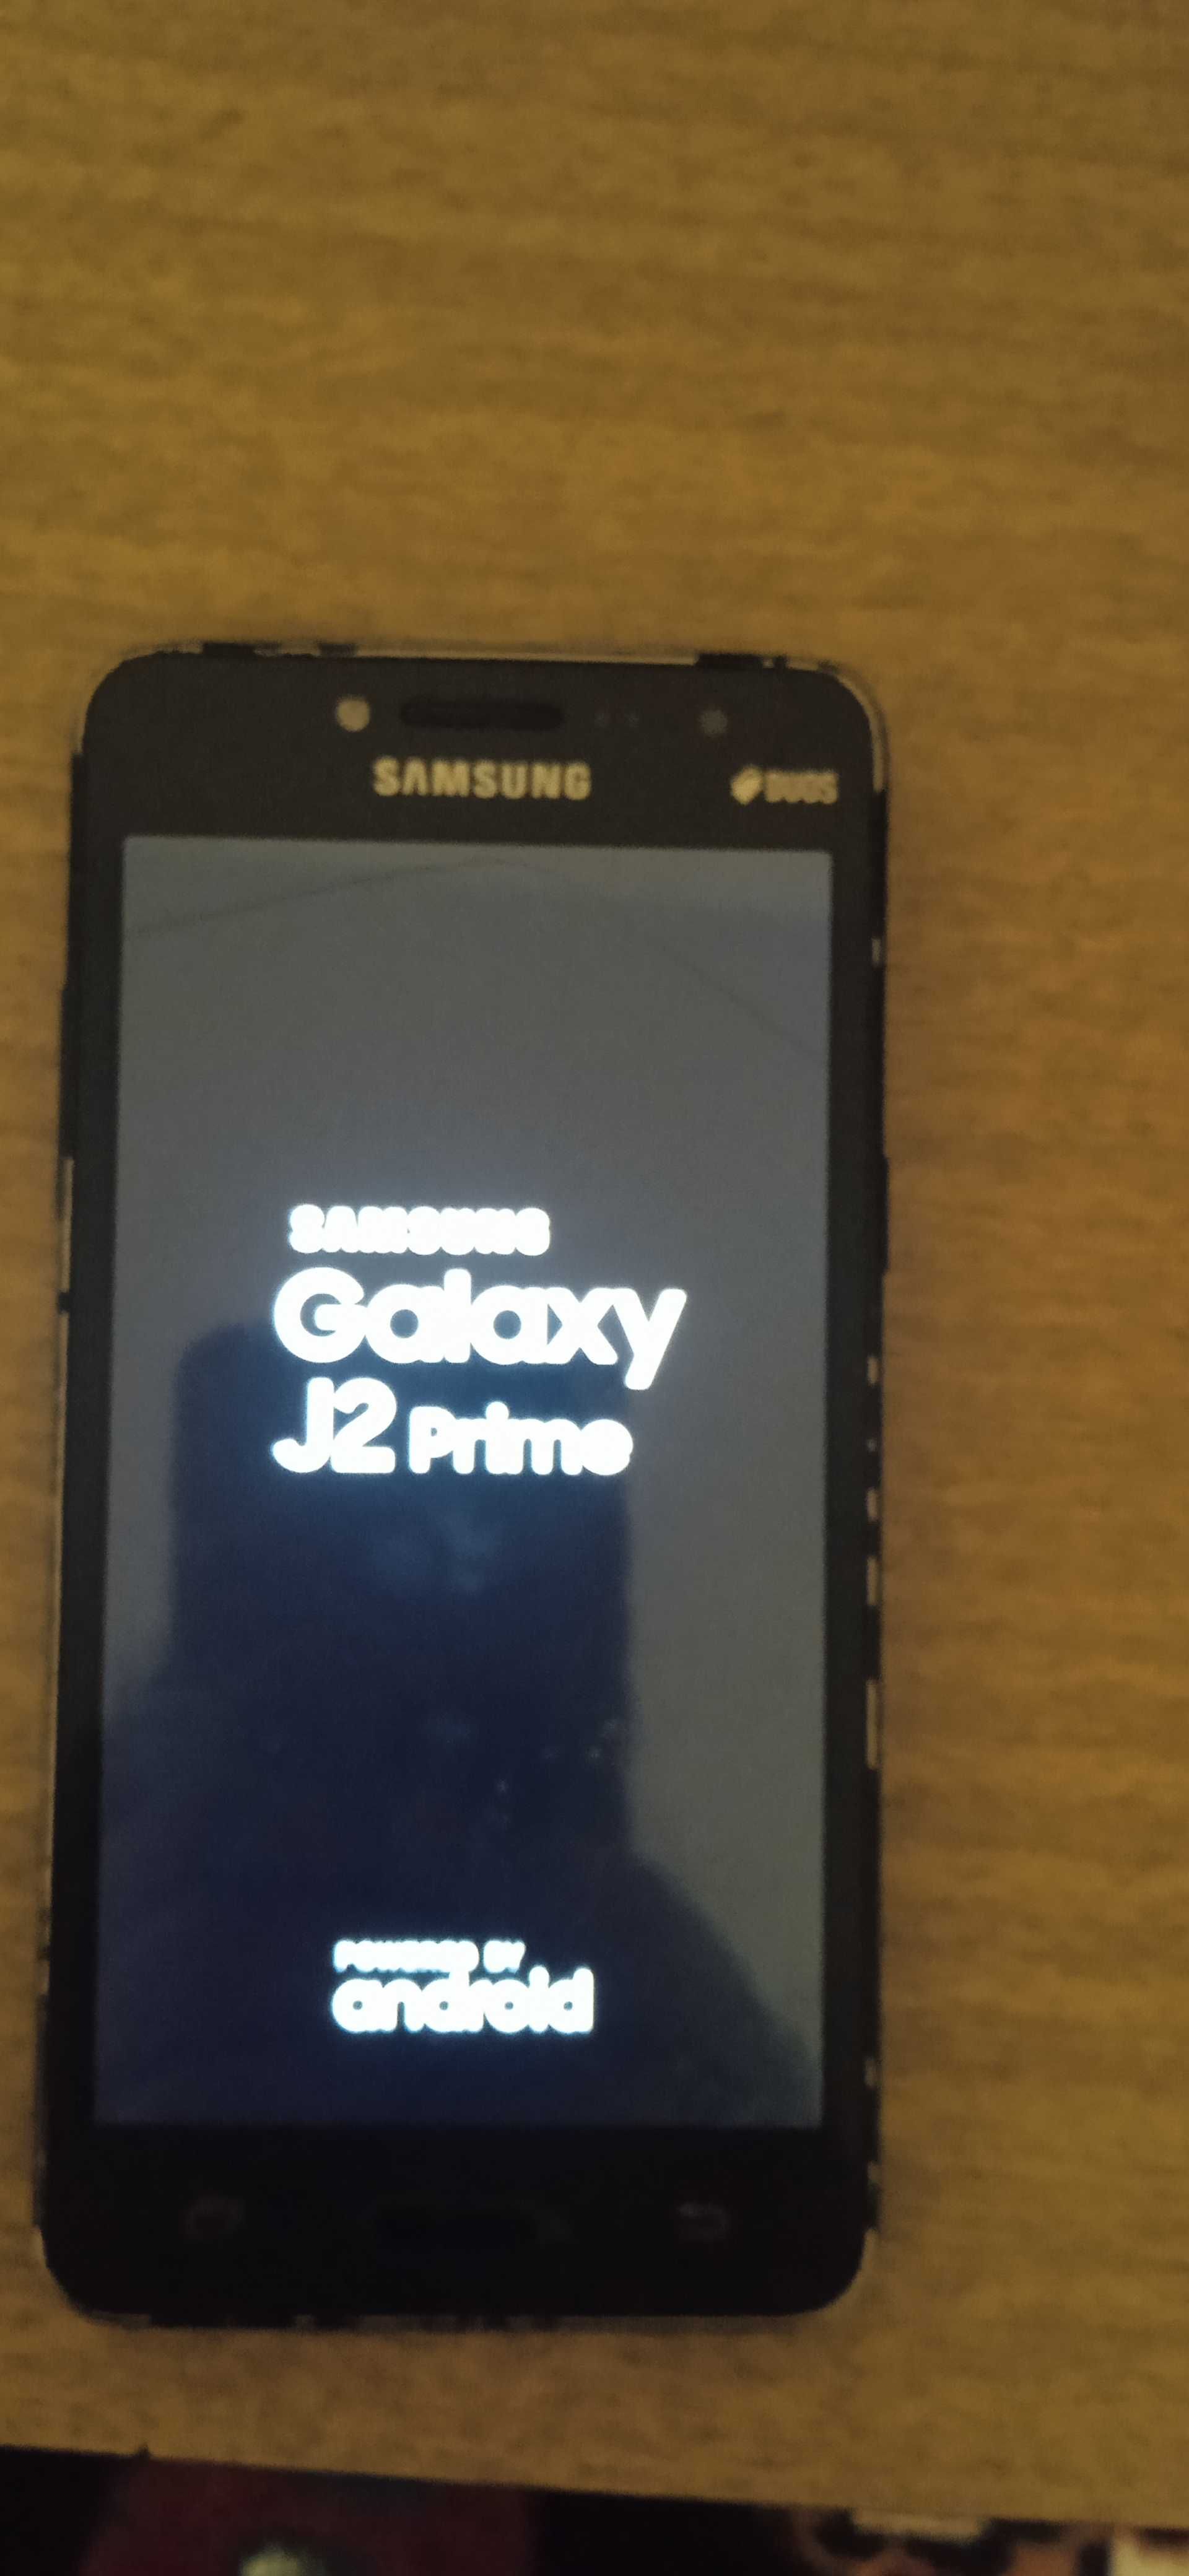 Samsung j2 prime